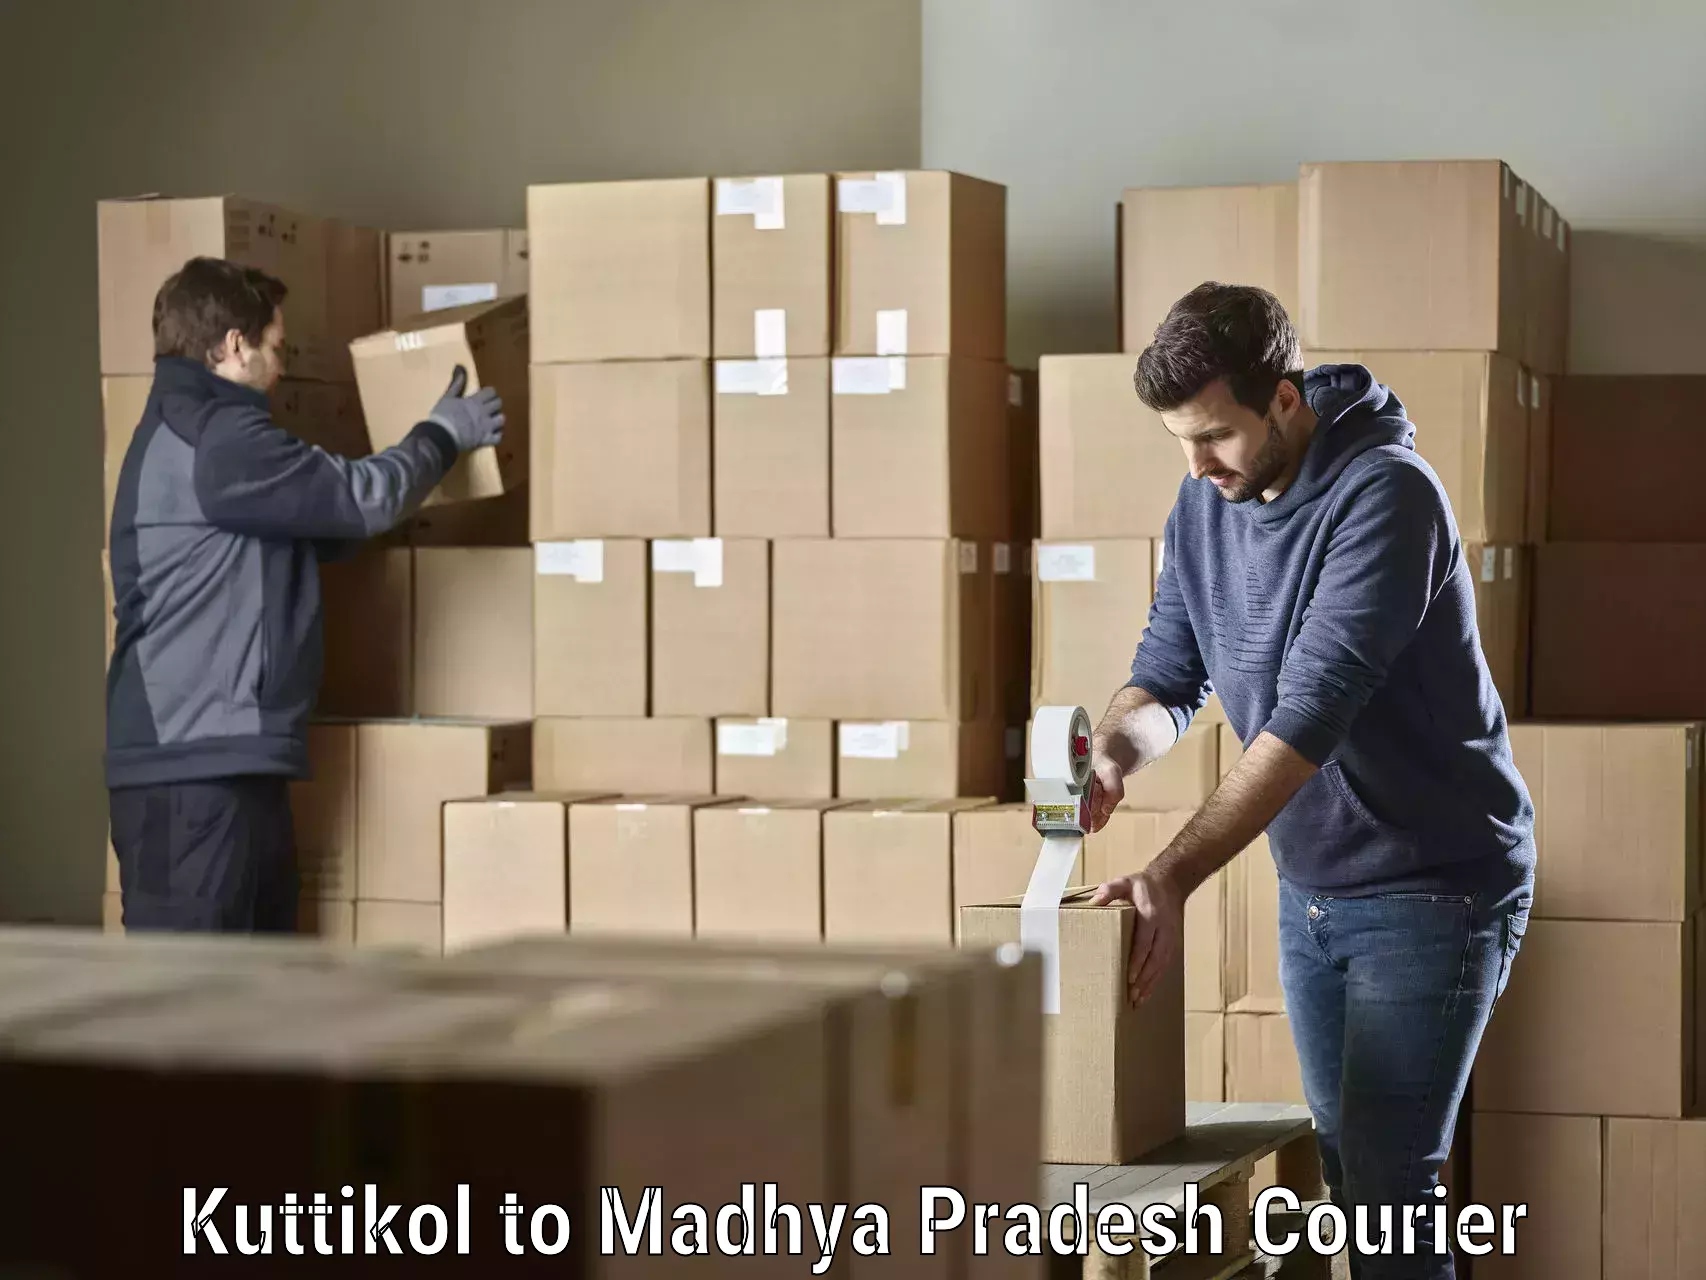 Specialized shipment handling Kuttikol to Nagda